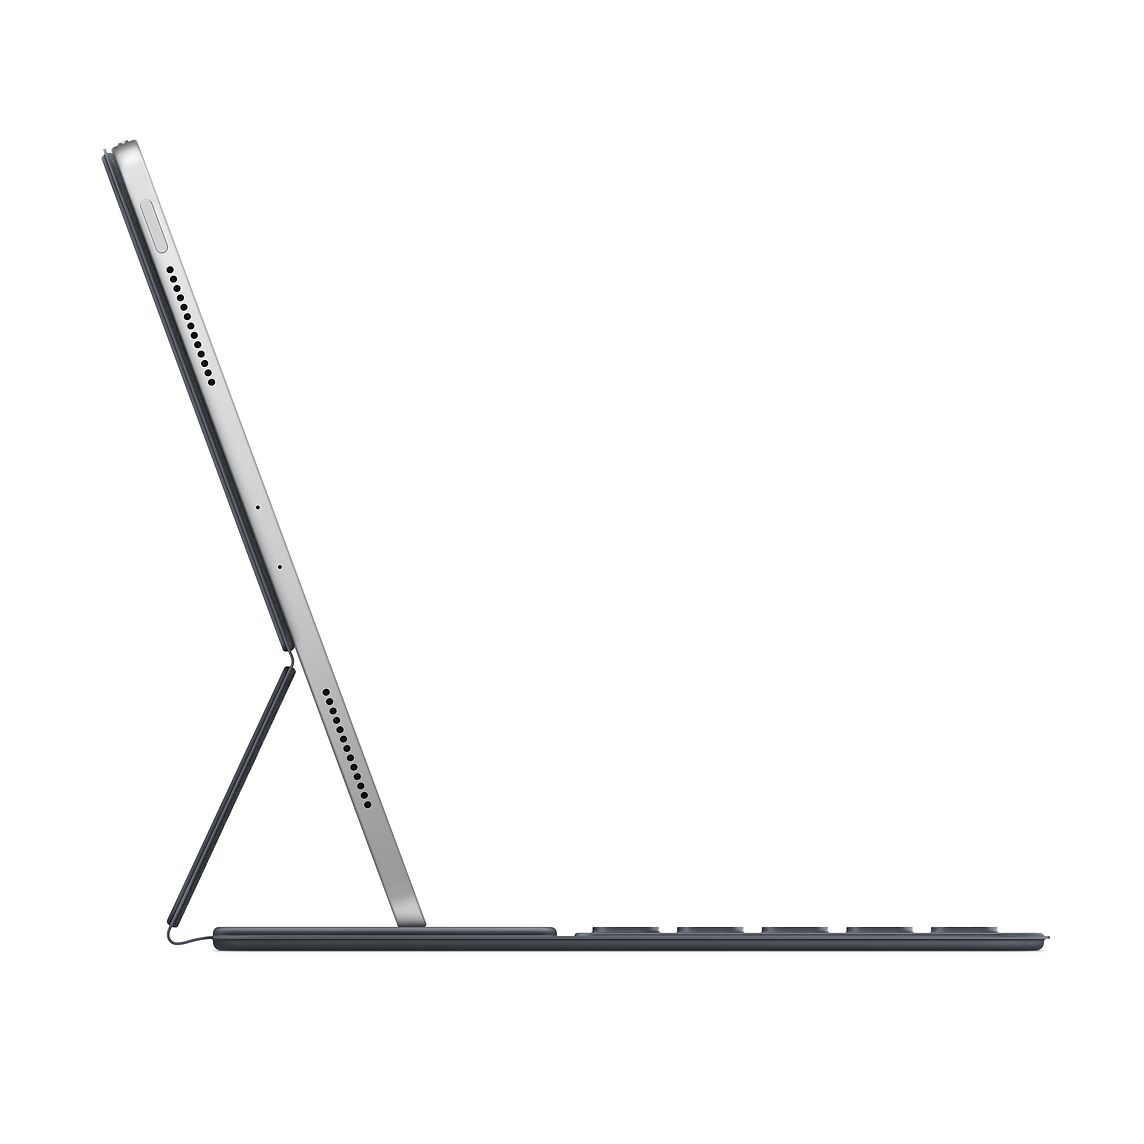 Apple Smart Keyboard Folio for iPad Pro 11 inch (Gen 1)